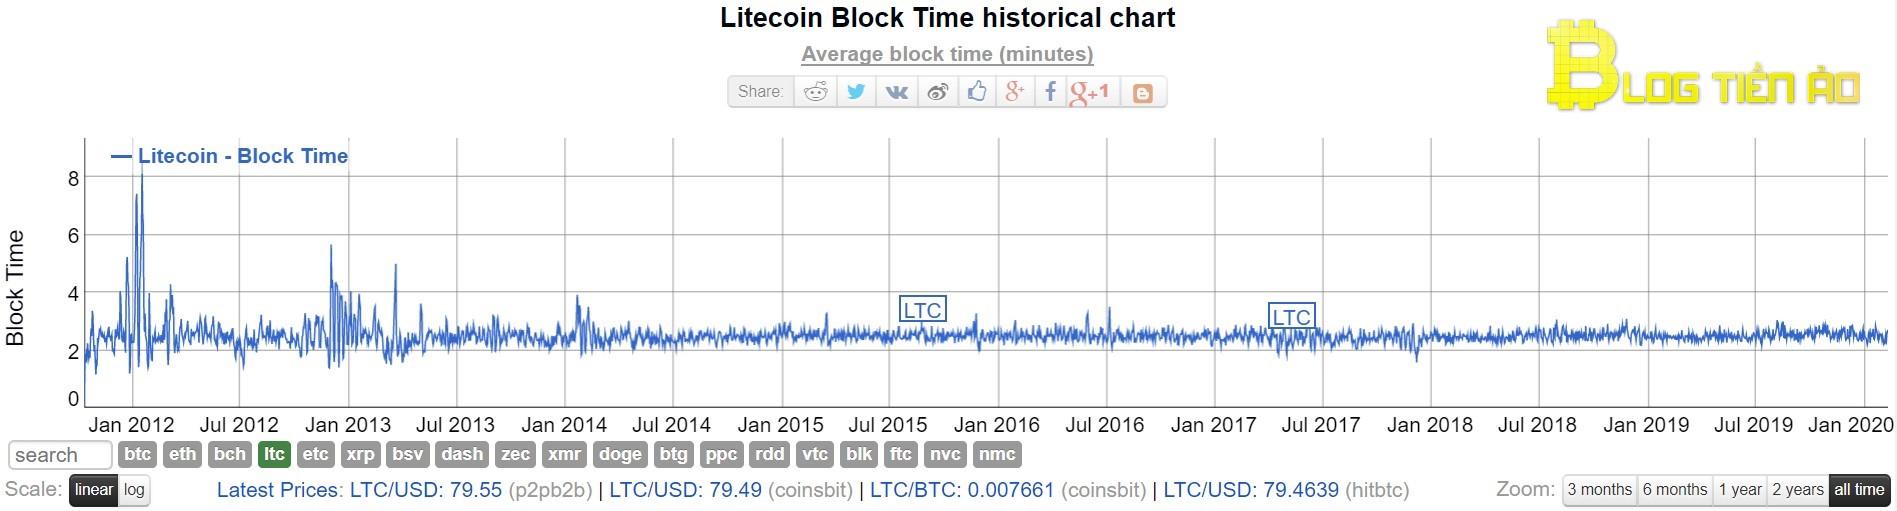 Czas utworzenia bloku Litecoin